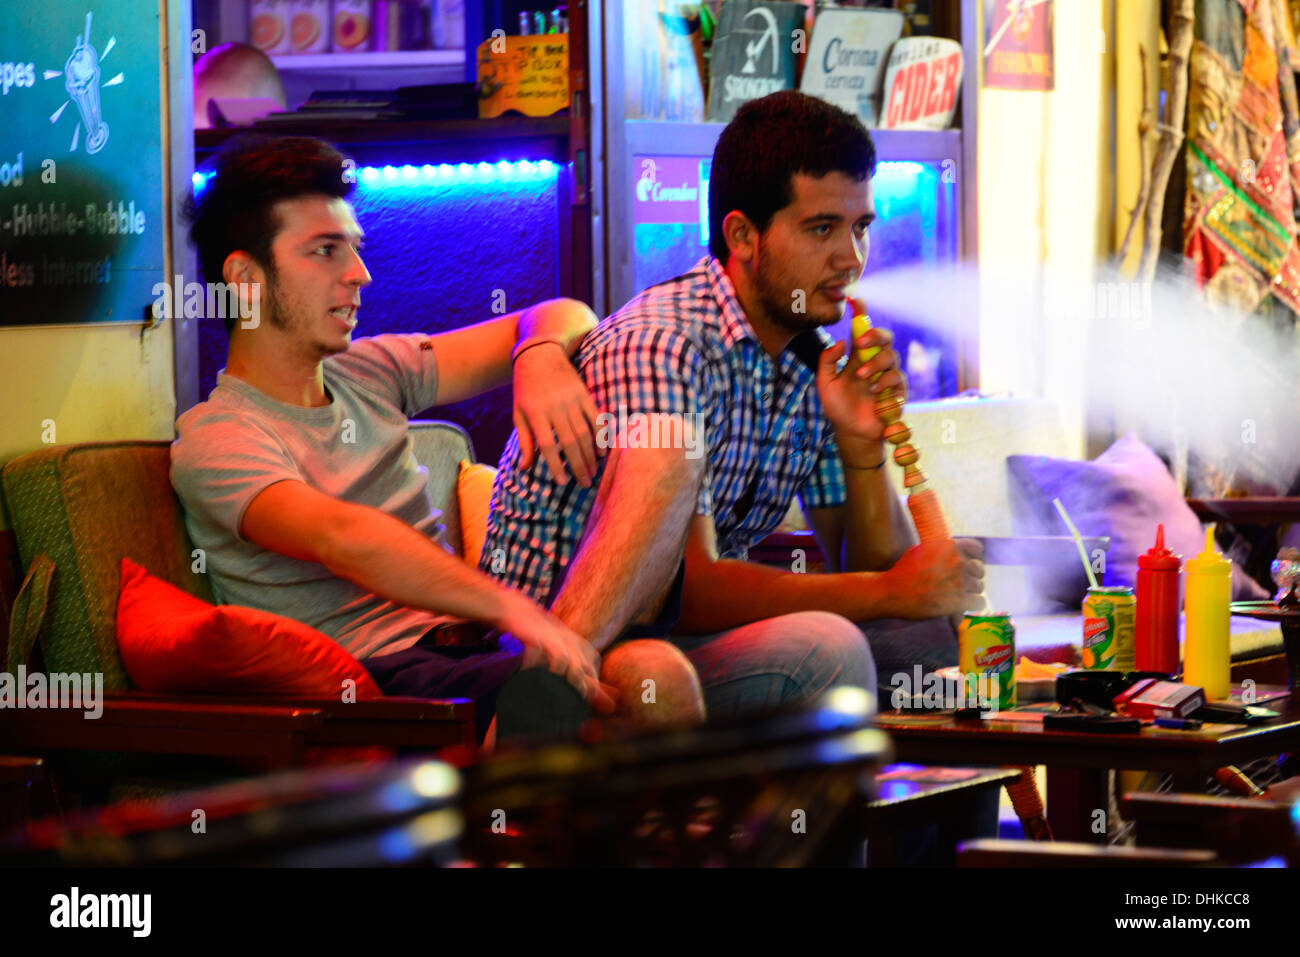 Young men at Shisha bar. Stock Photo